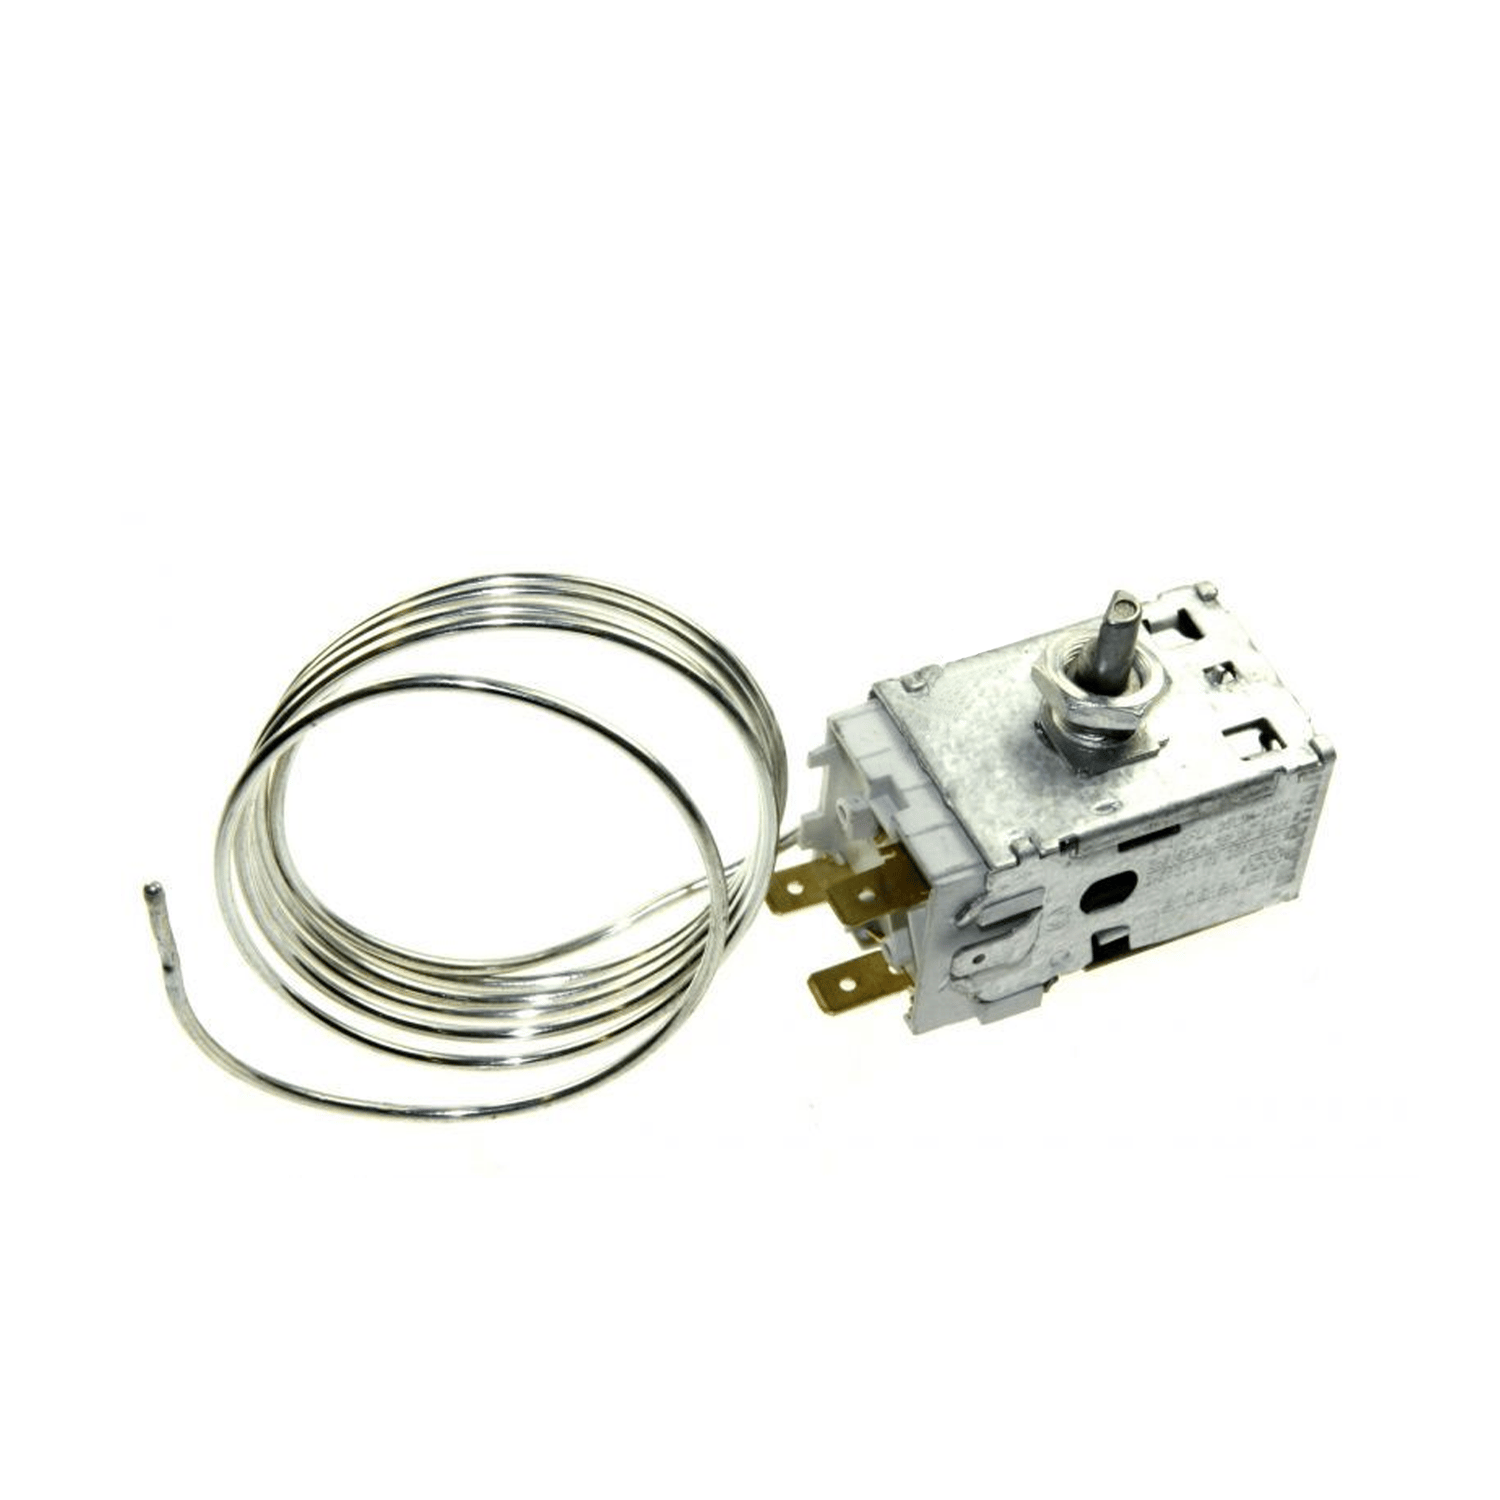 Thermostaat ATEA C003-12704 voor koelkast Whirlpool / Indesite, min -14 ° C, MAX -29.5 ° C, L 1150 mm